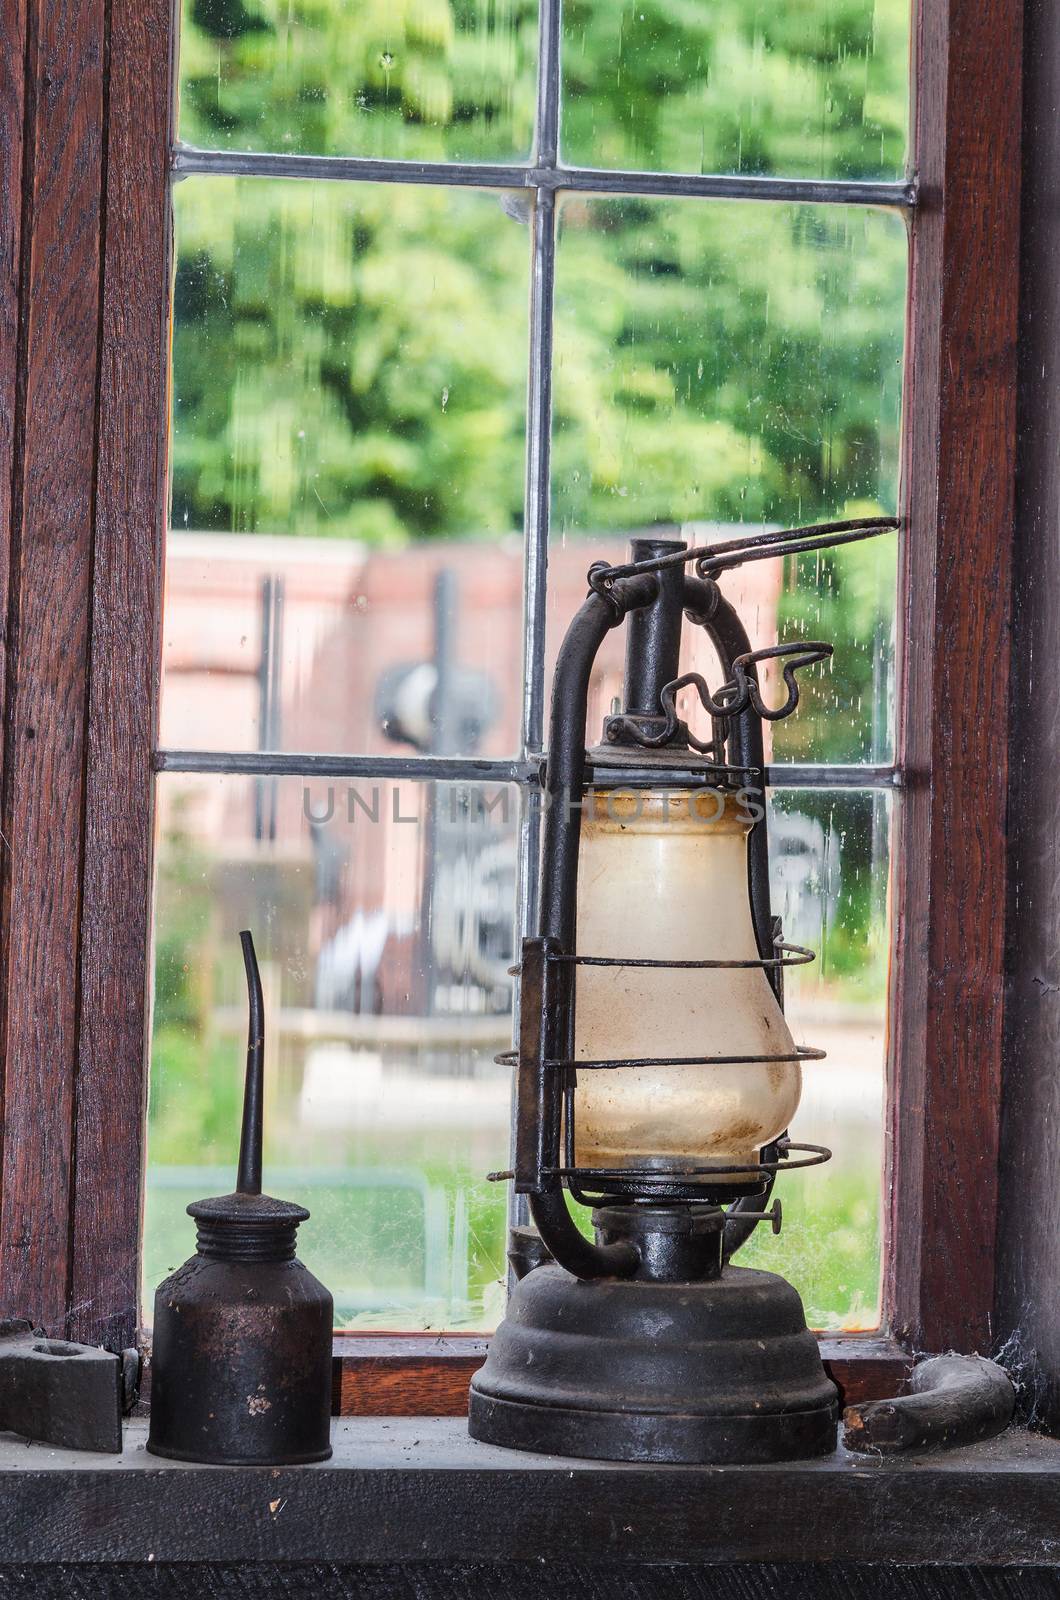 Old kerosene lamp on a window sill in the background a lattice window.